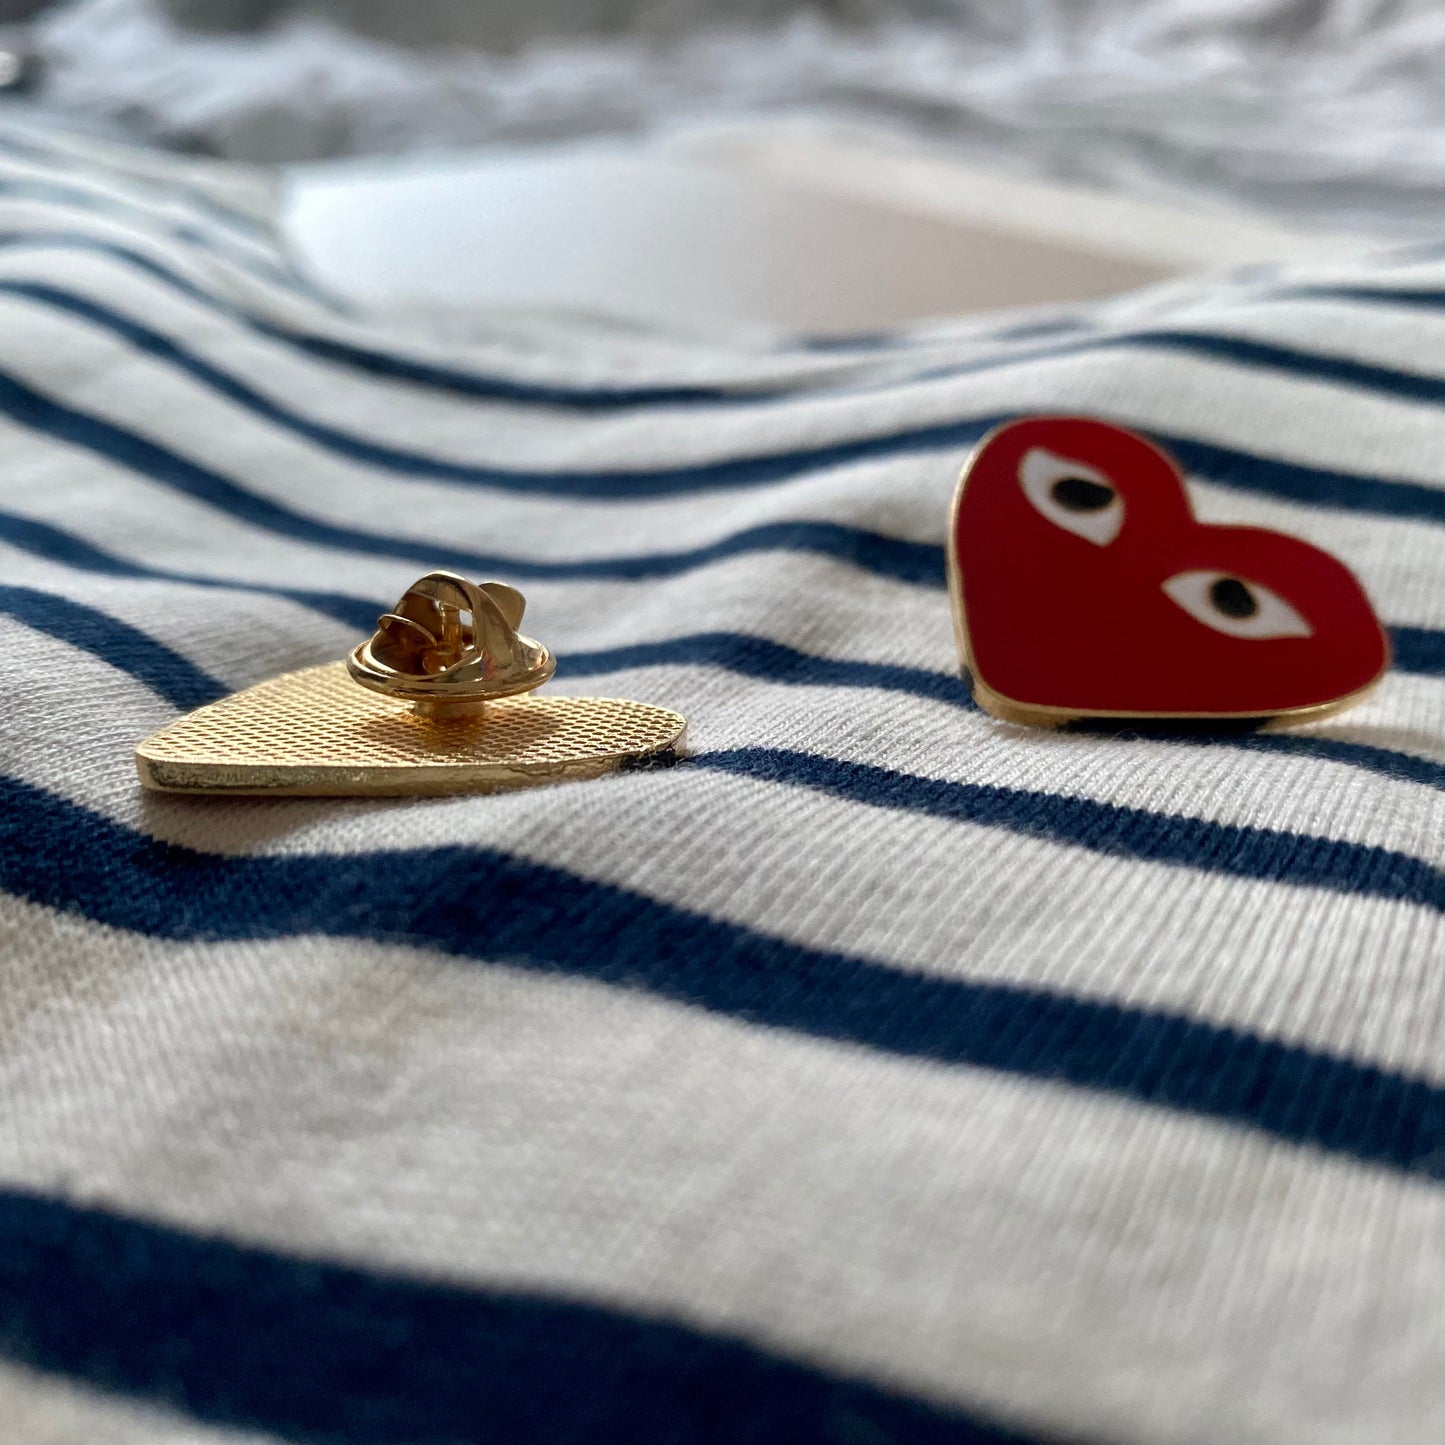 ʟɪᴍɪᴛᴇᴅ ᴇᴅɪᴛɪᴏɴ Breton Stripe Tee Heart Pin Set - Navy